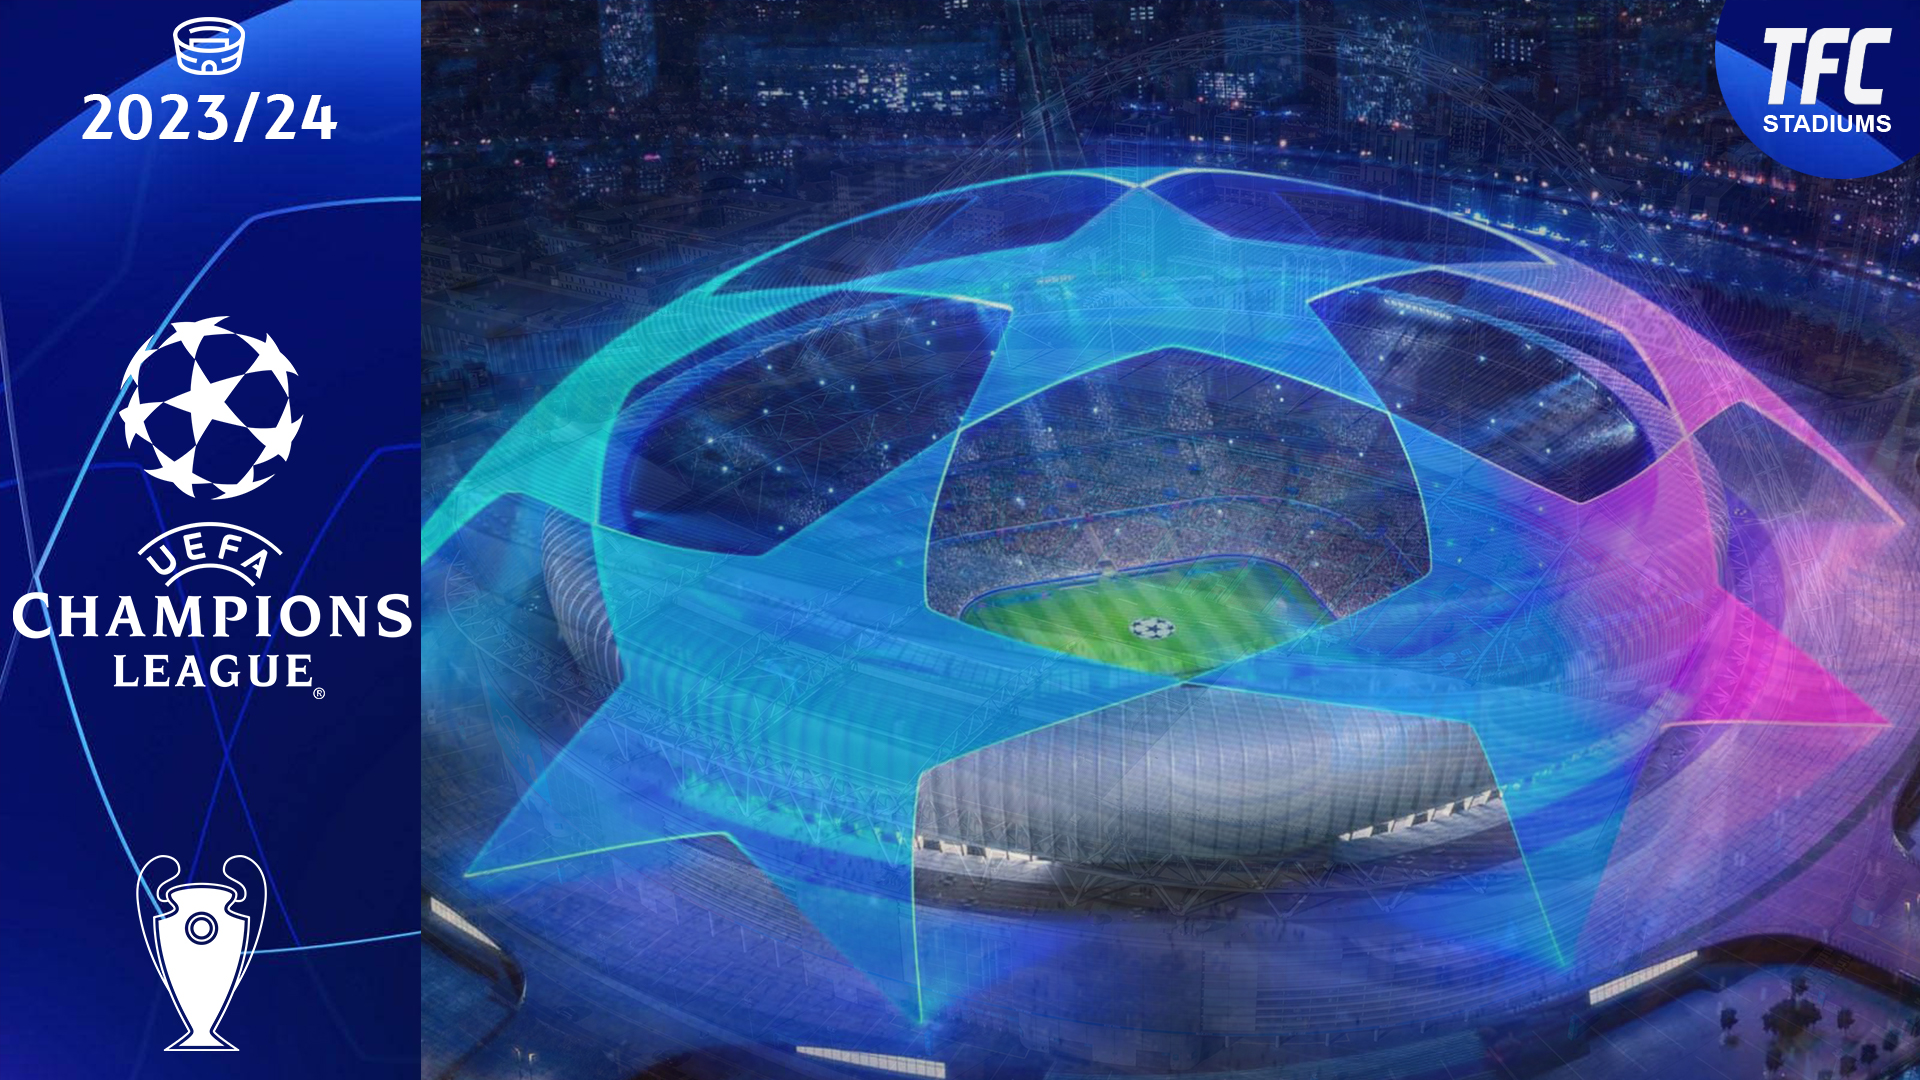 UEFA Champions League 2023/24 Stadiums TFC Stadiums